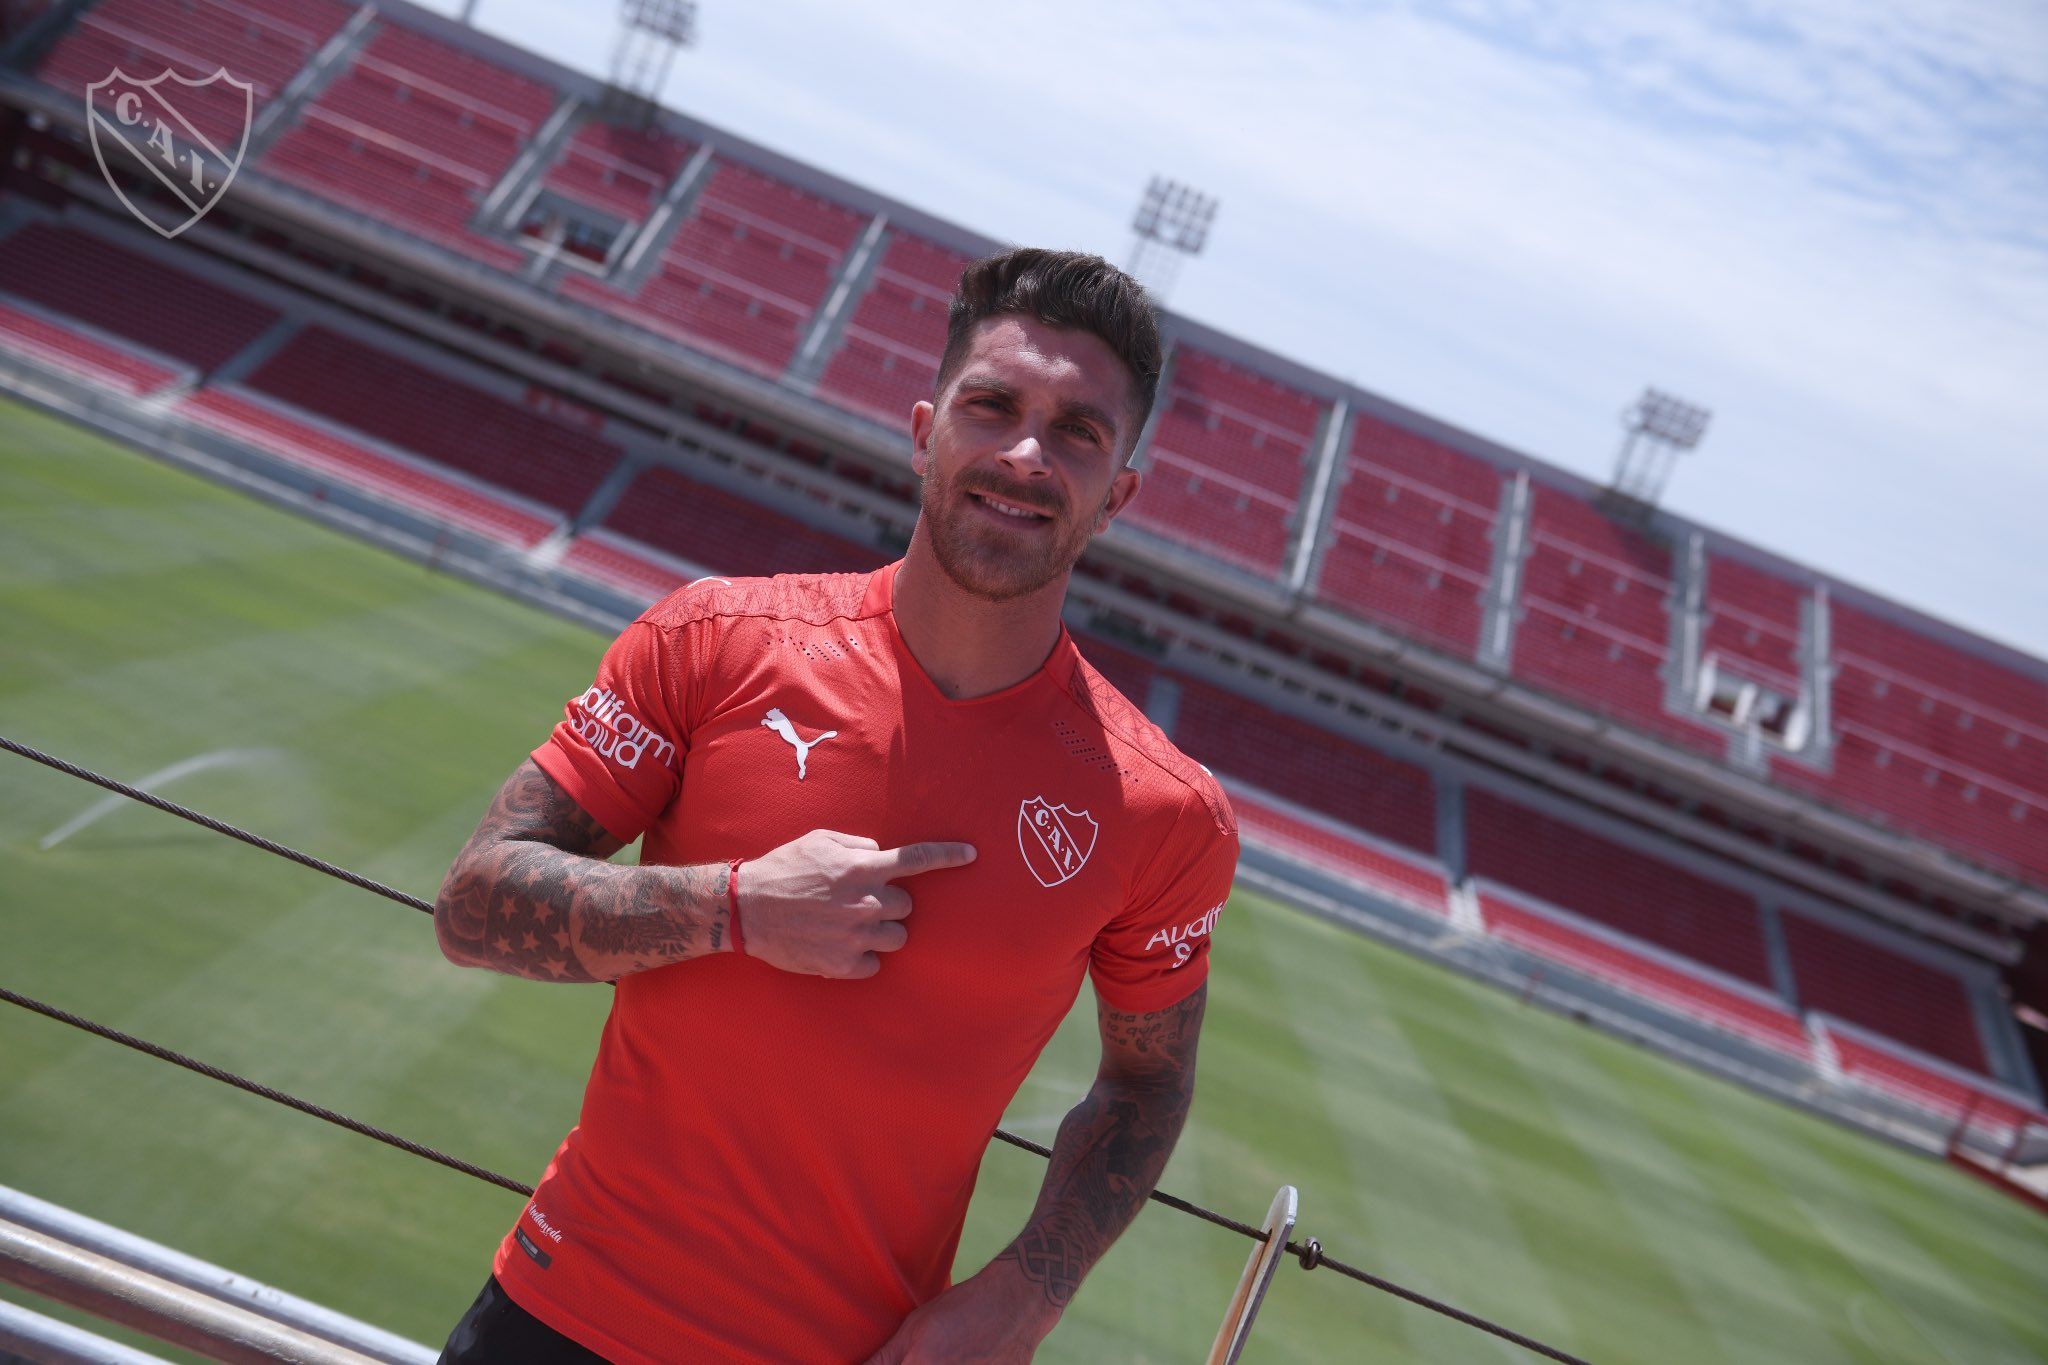 La despedida de Arregui para Independiente: "Necesitaba reconstruirme para volver a Medellín"